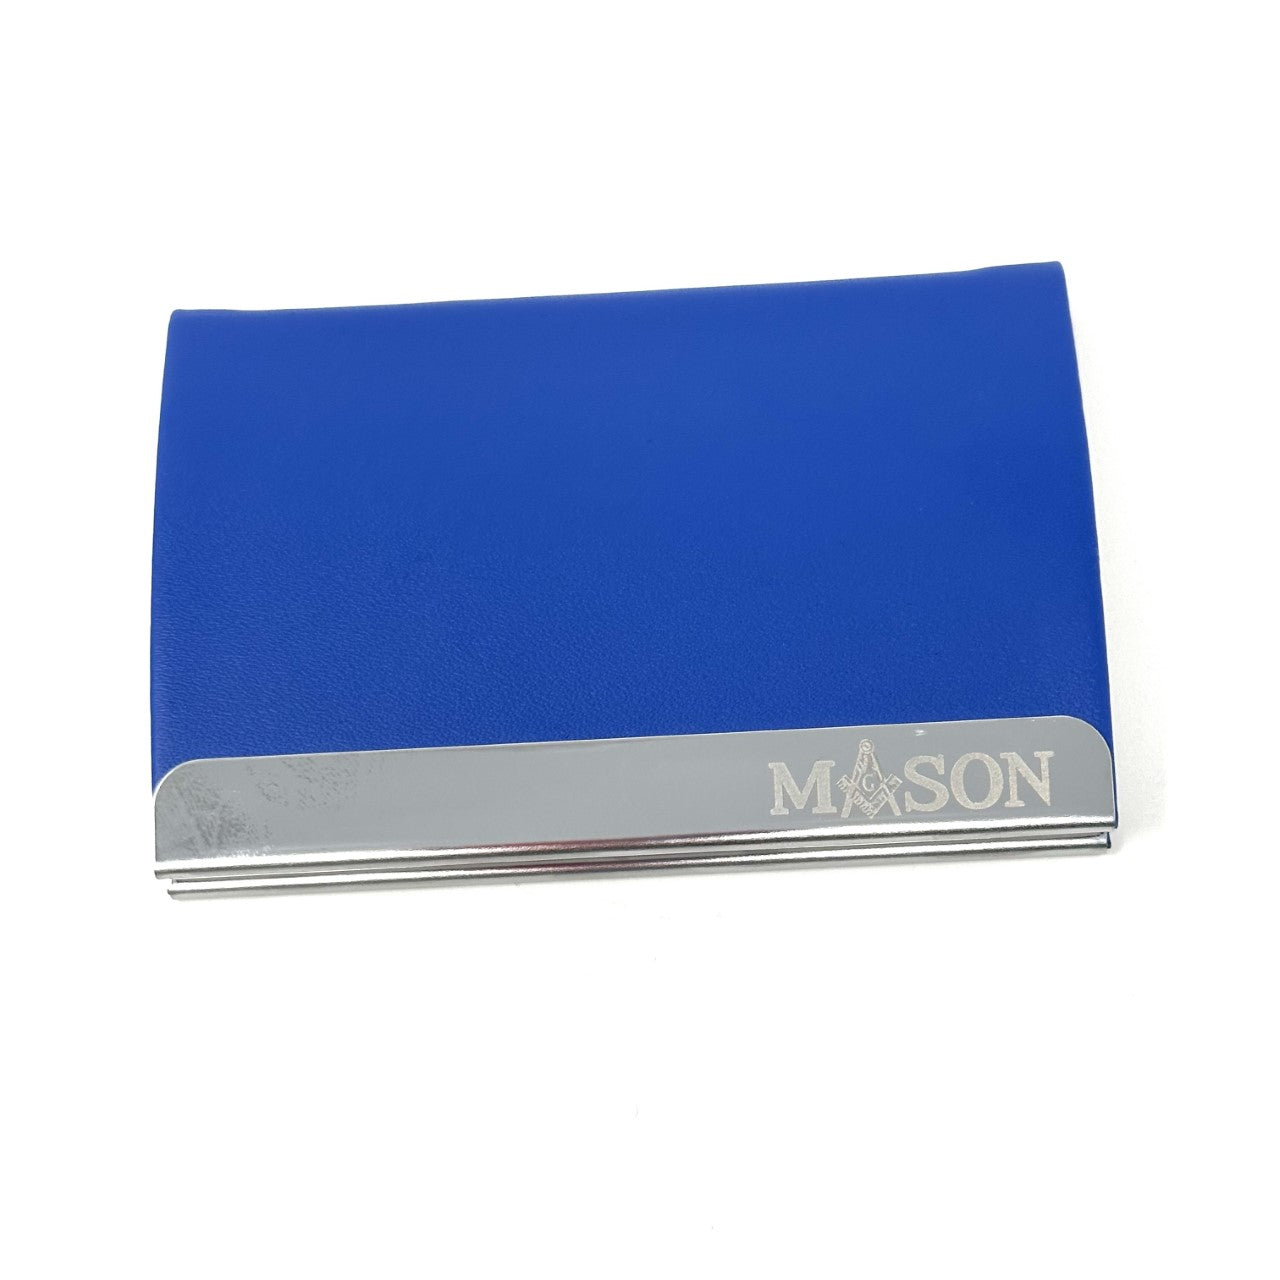 Mason Business Card Holder